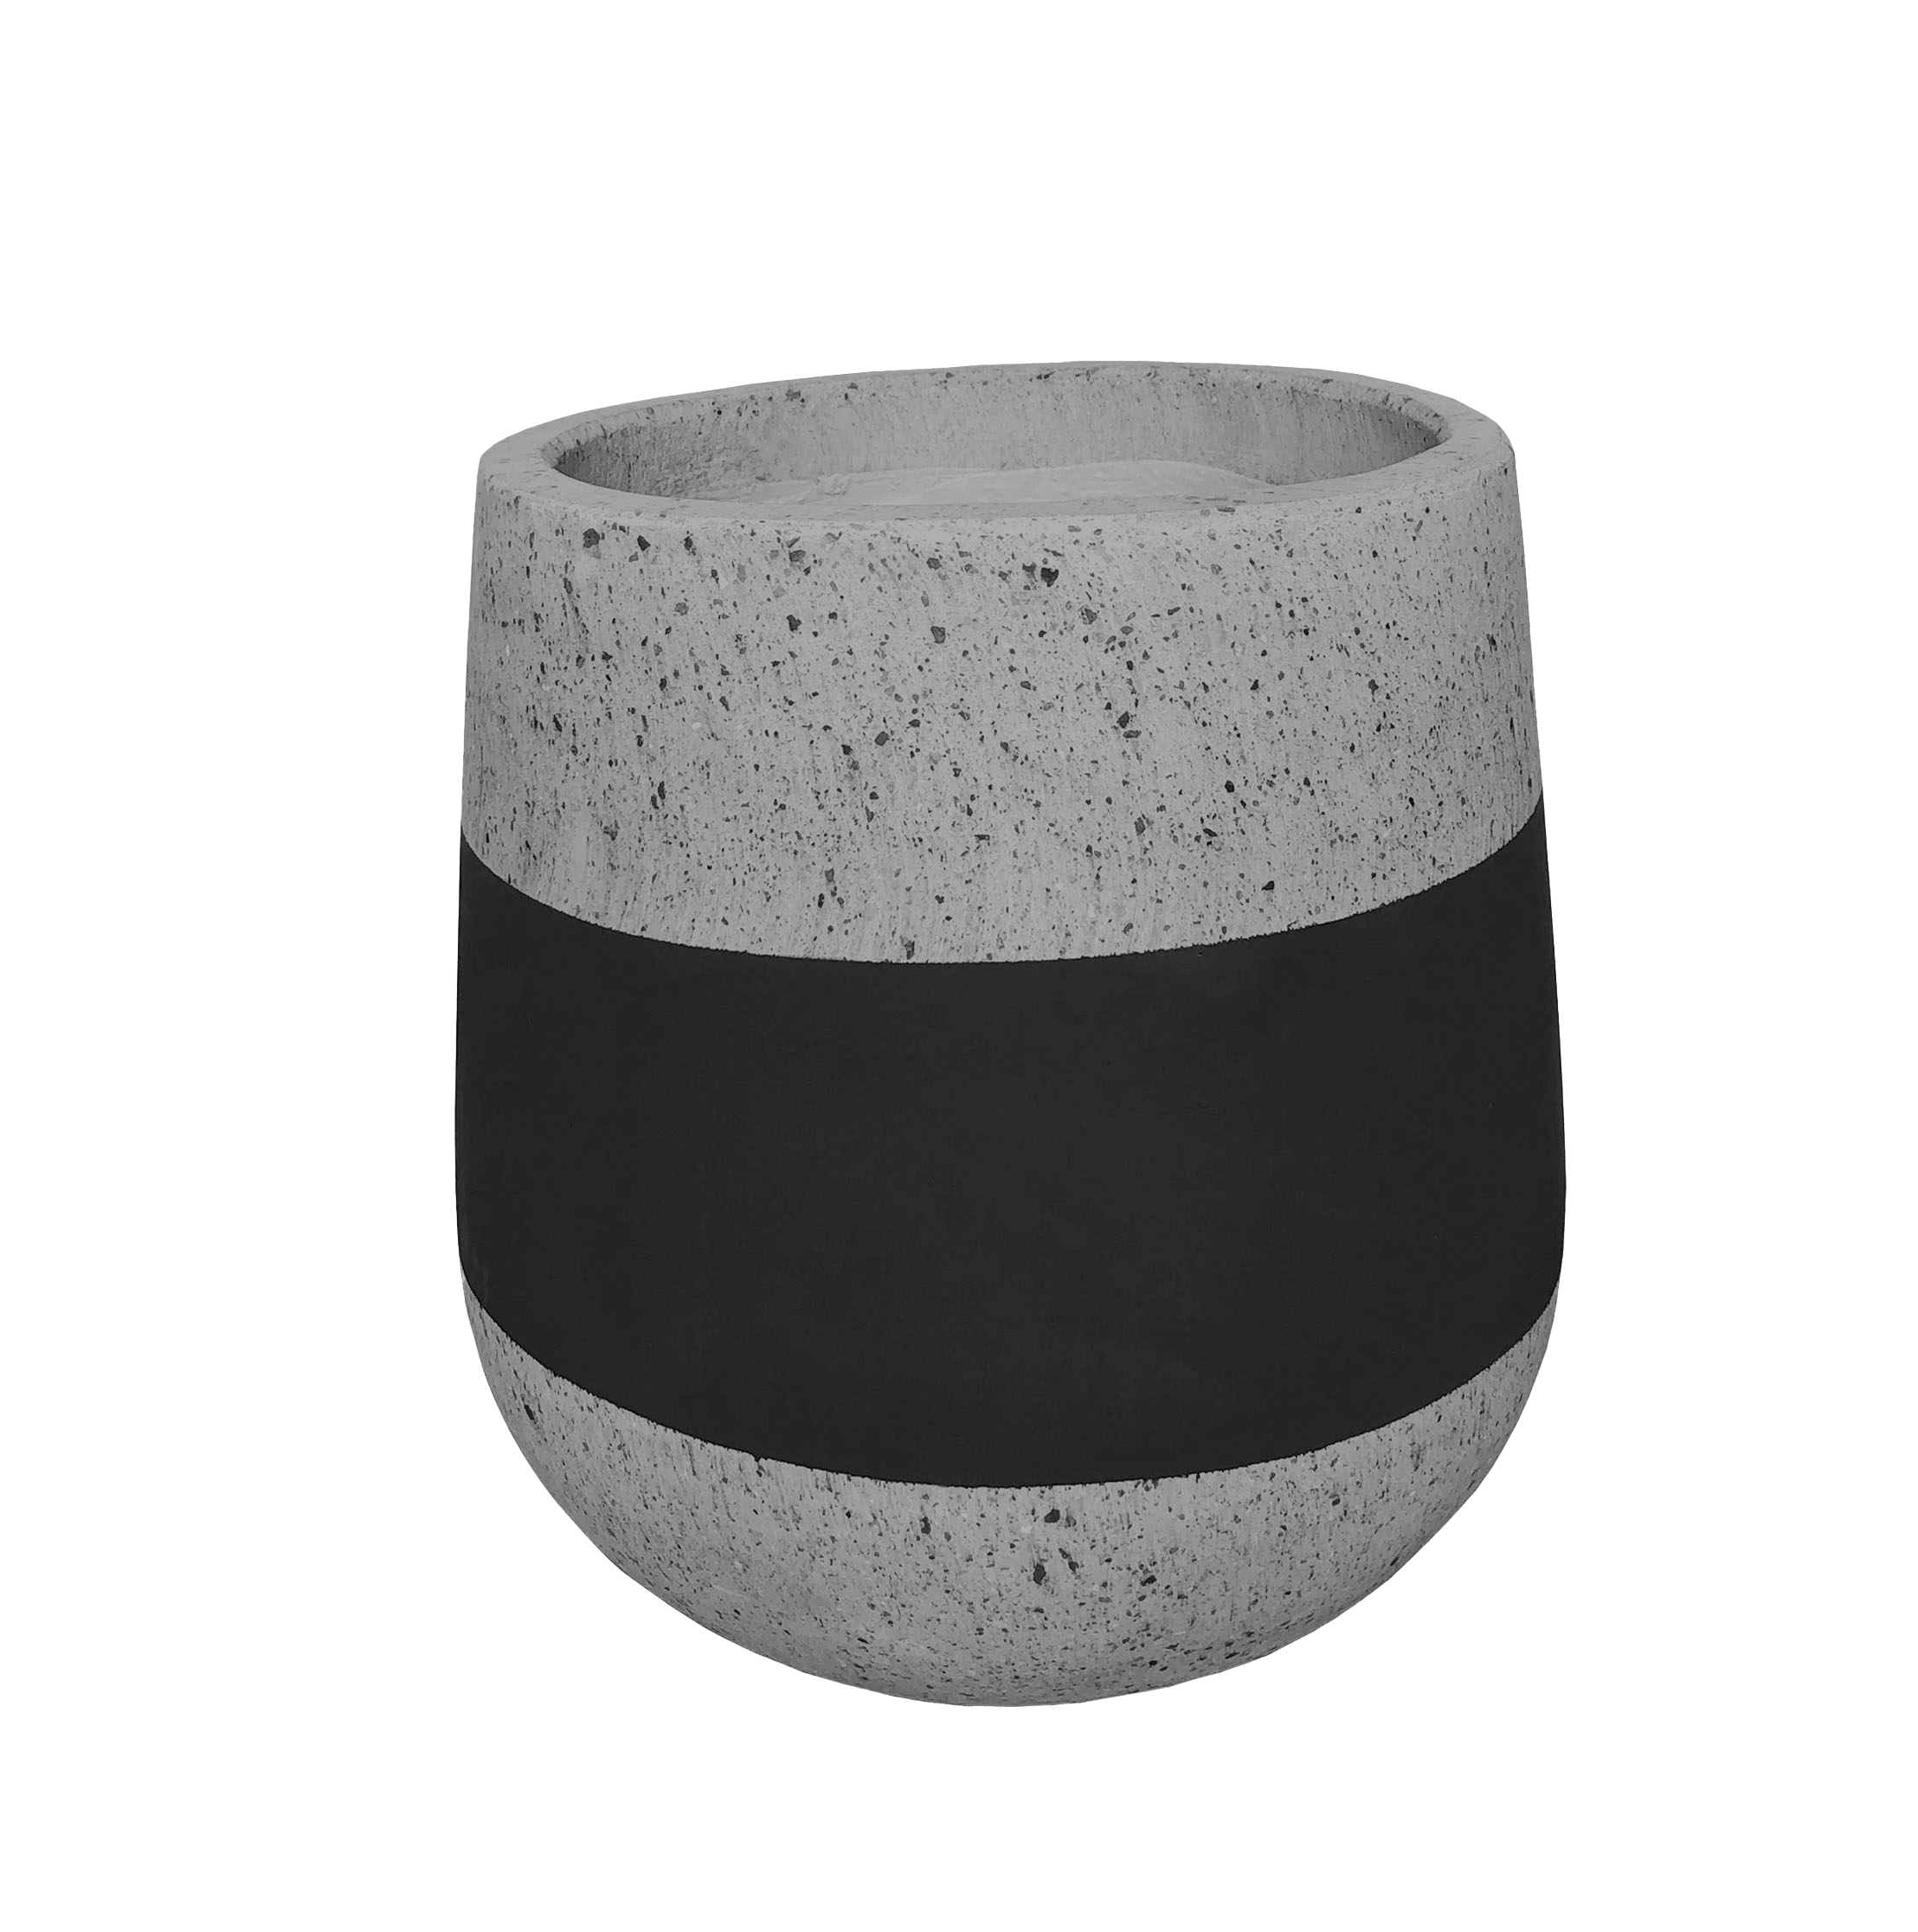 VT133S - FOAM LITE & CONCRETE POT Pots & Planters Viet Tin Pots S P3 Styrofoam & Concrete